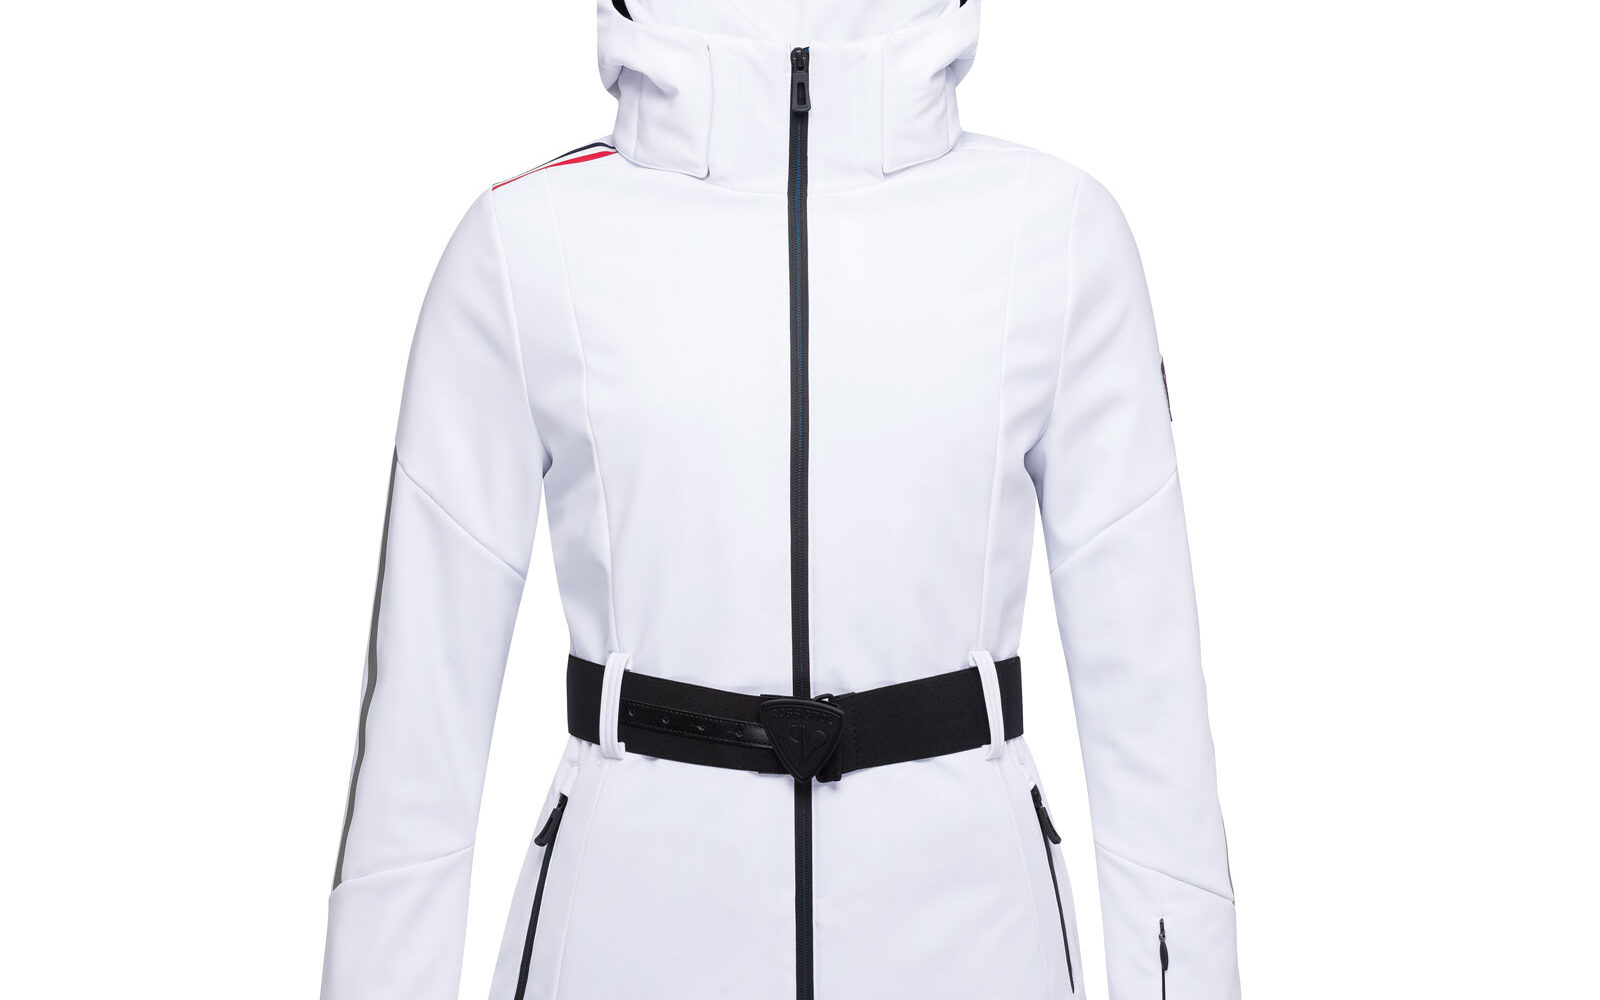 Rossignol W Ellipsis, giacca da sci tecnica, impermeabile e traspirante, con imbottitura PrimaLoft silver, cintura che valorizza il punto vita. Euro 850